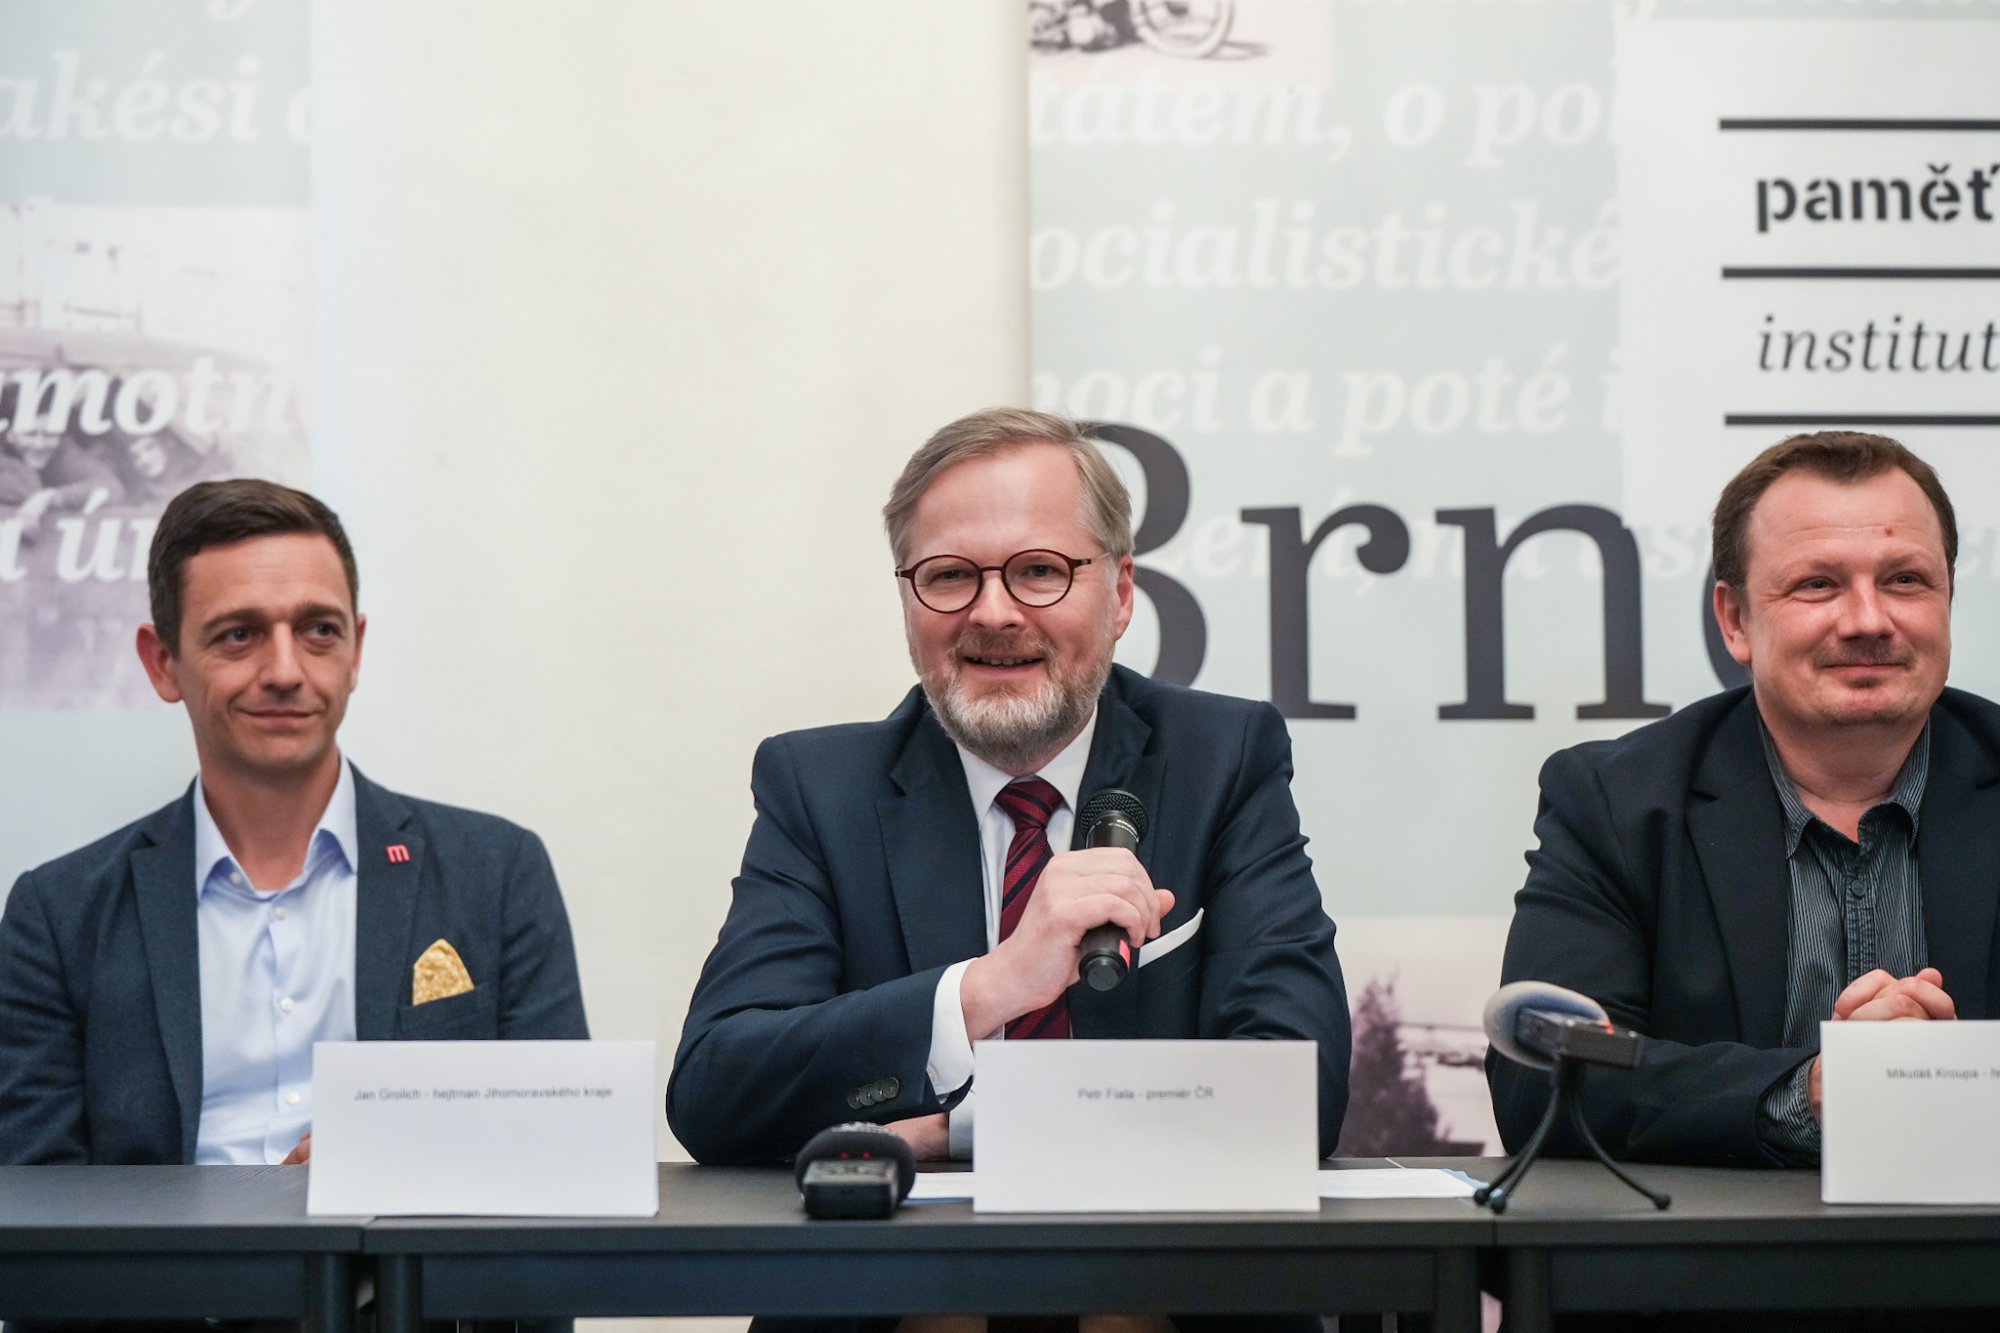 Premiér Fiala se v Brně zúčastnil slavnostního podpisu smlouvy, předal ceny v rámci esejistické soutěže a zahájil interaktivní výstavu